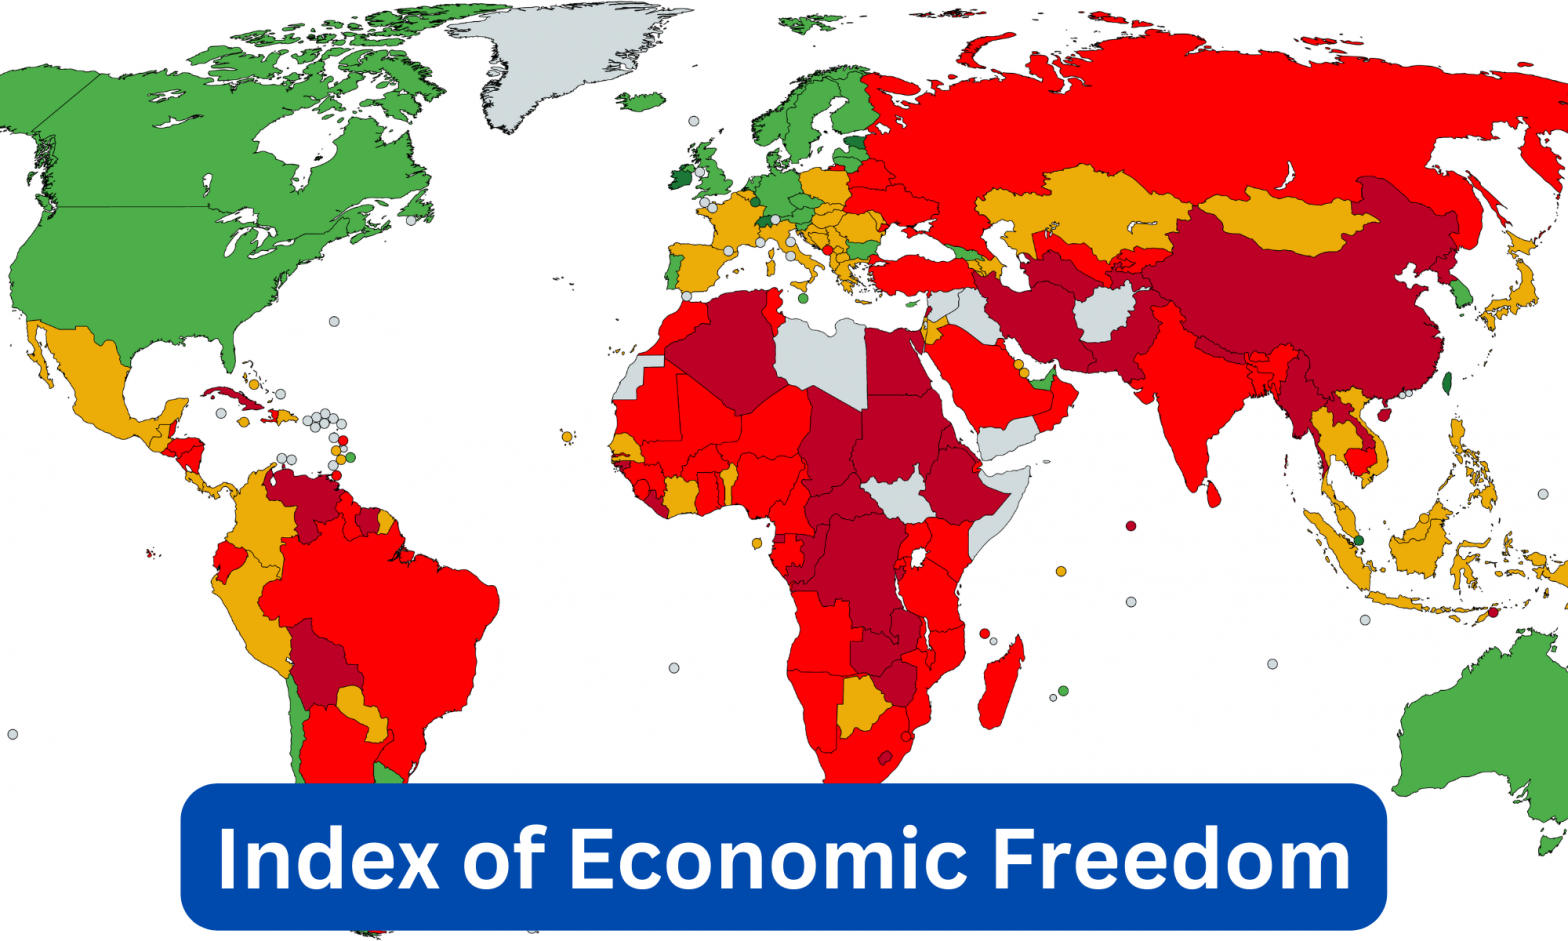 Index of Economic Freedom: